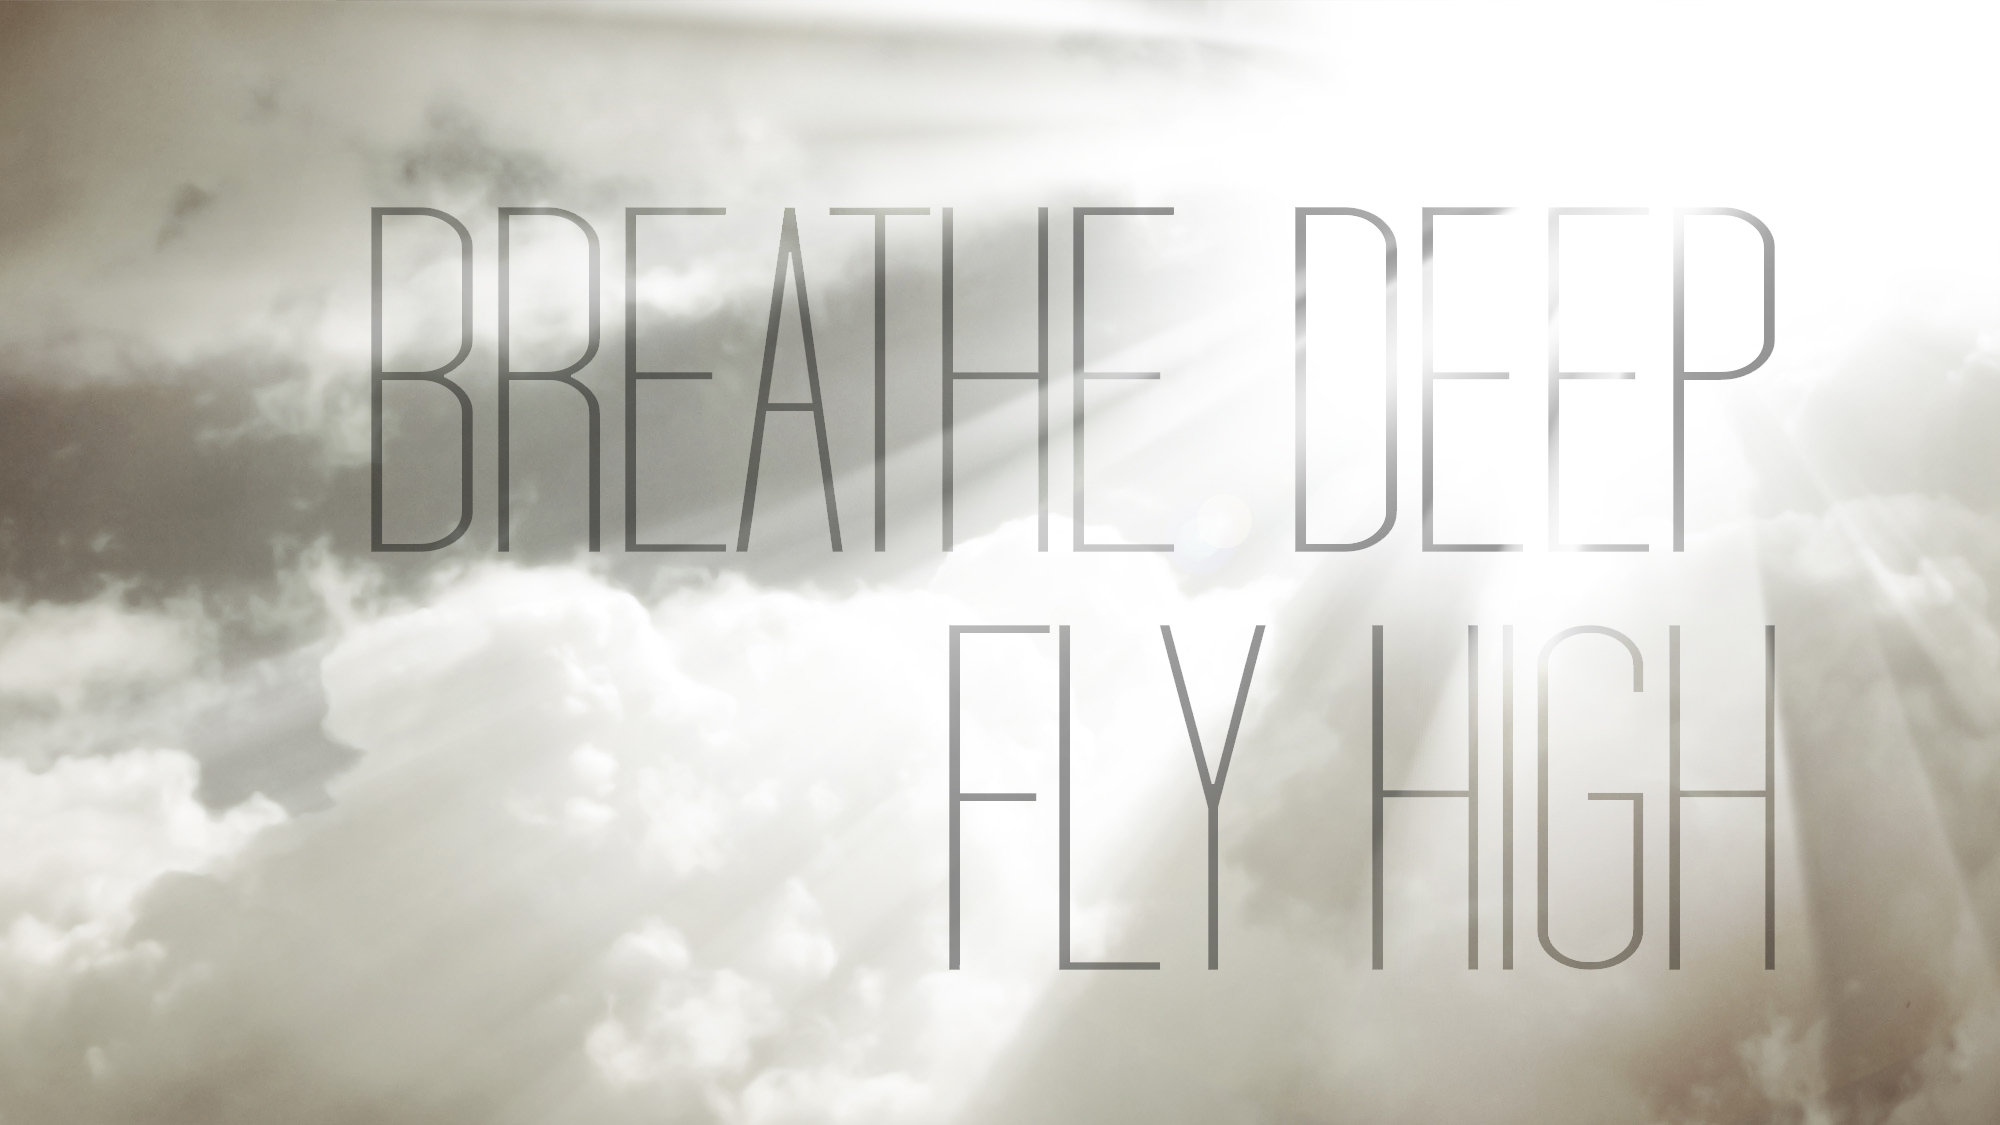 Breathe Deep, Fly High